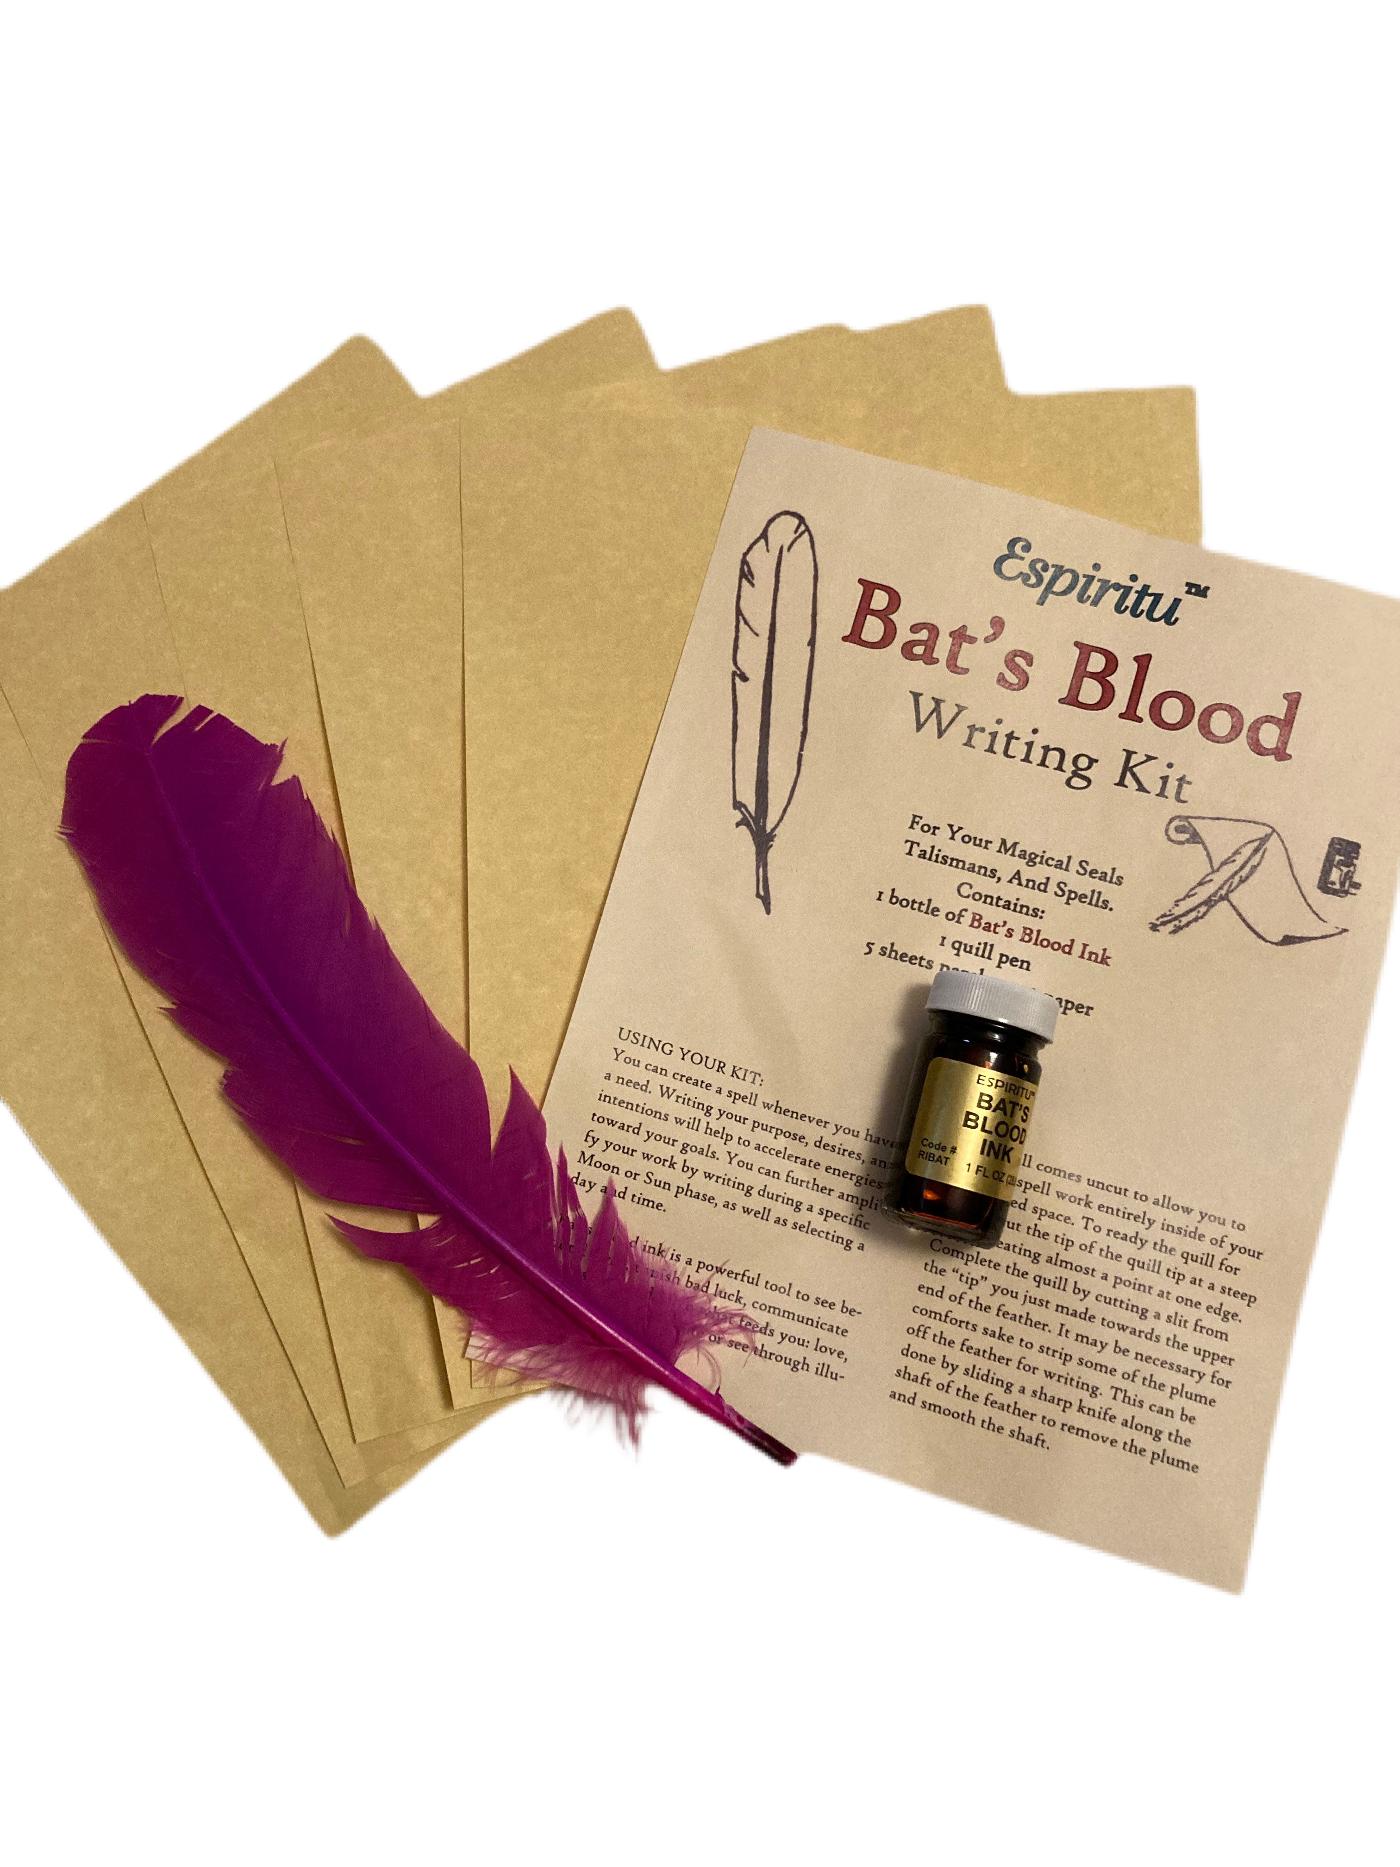 Bats Blood Ink Writing Kit